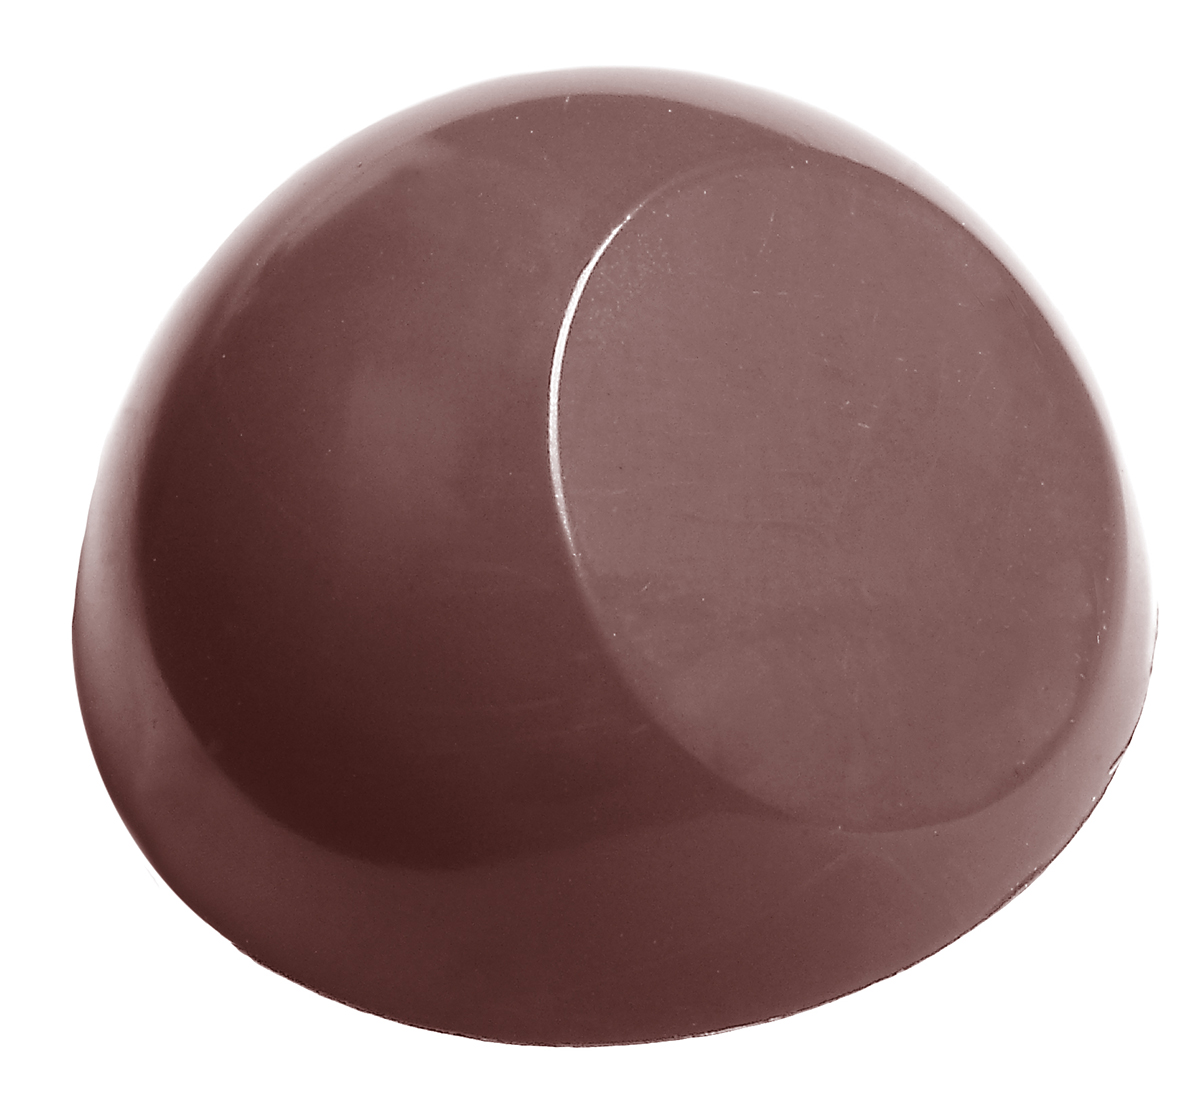 Billede af Professionel chokoladeform i polycarbonat - Half sphere with flat side Ø2,75 cm CW1561